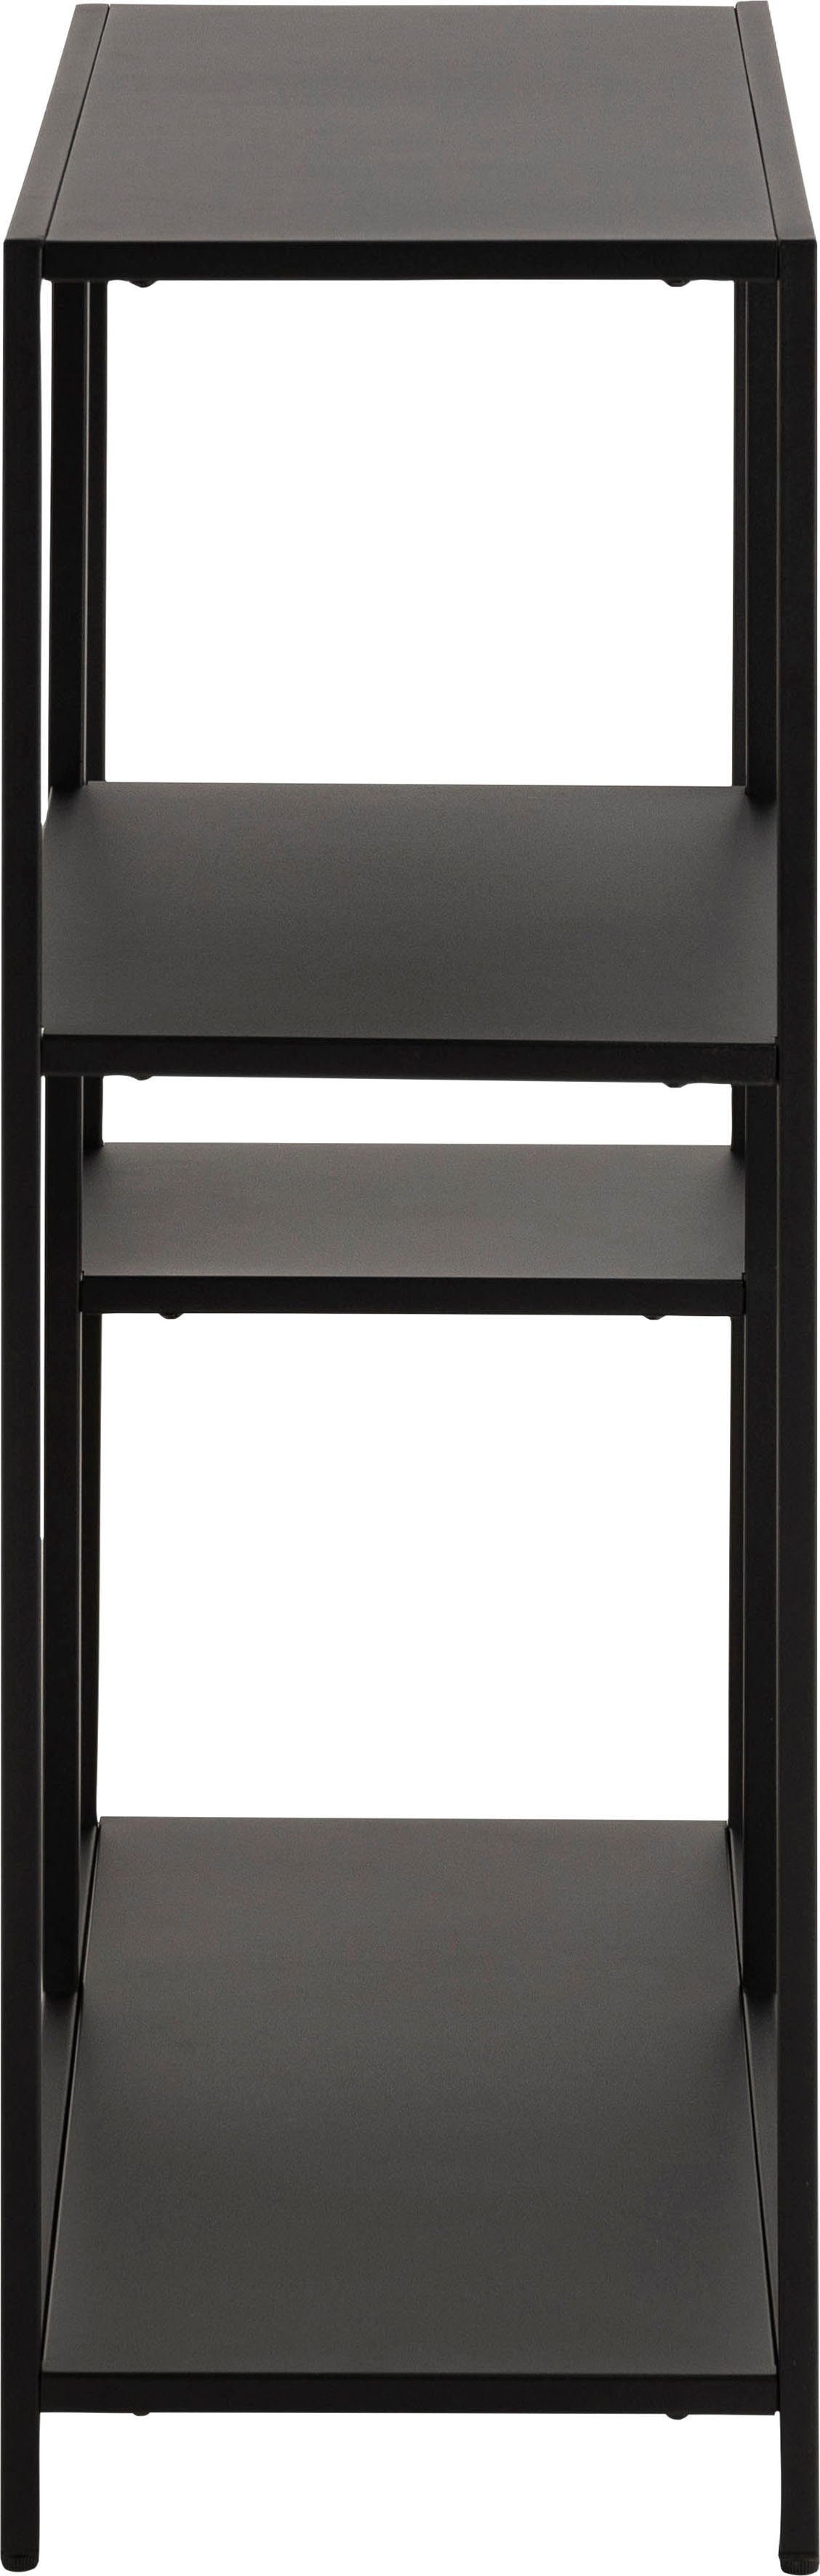 andas Bücherregal »New York«, Regal, aus einem schönen, schwarzem Metallgestell in gradliniger Optik, Höhe 86 cm, Assymetrisch-kaufen